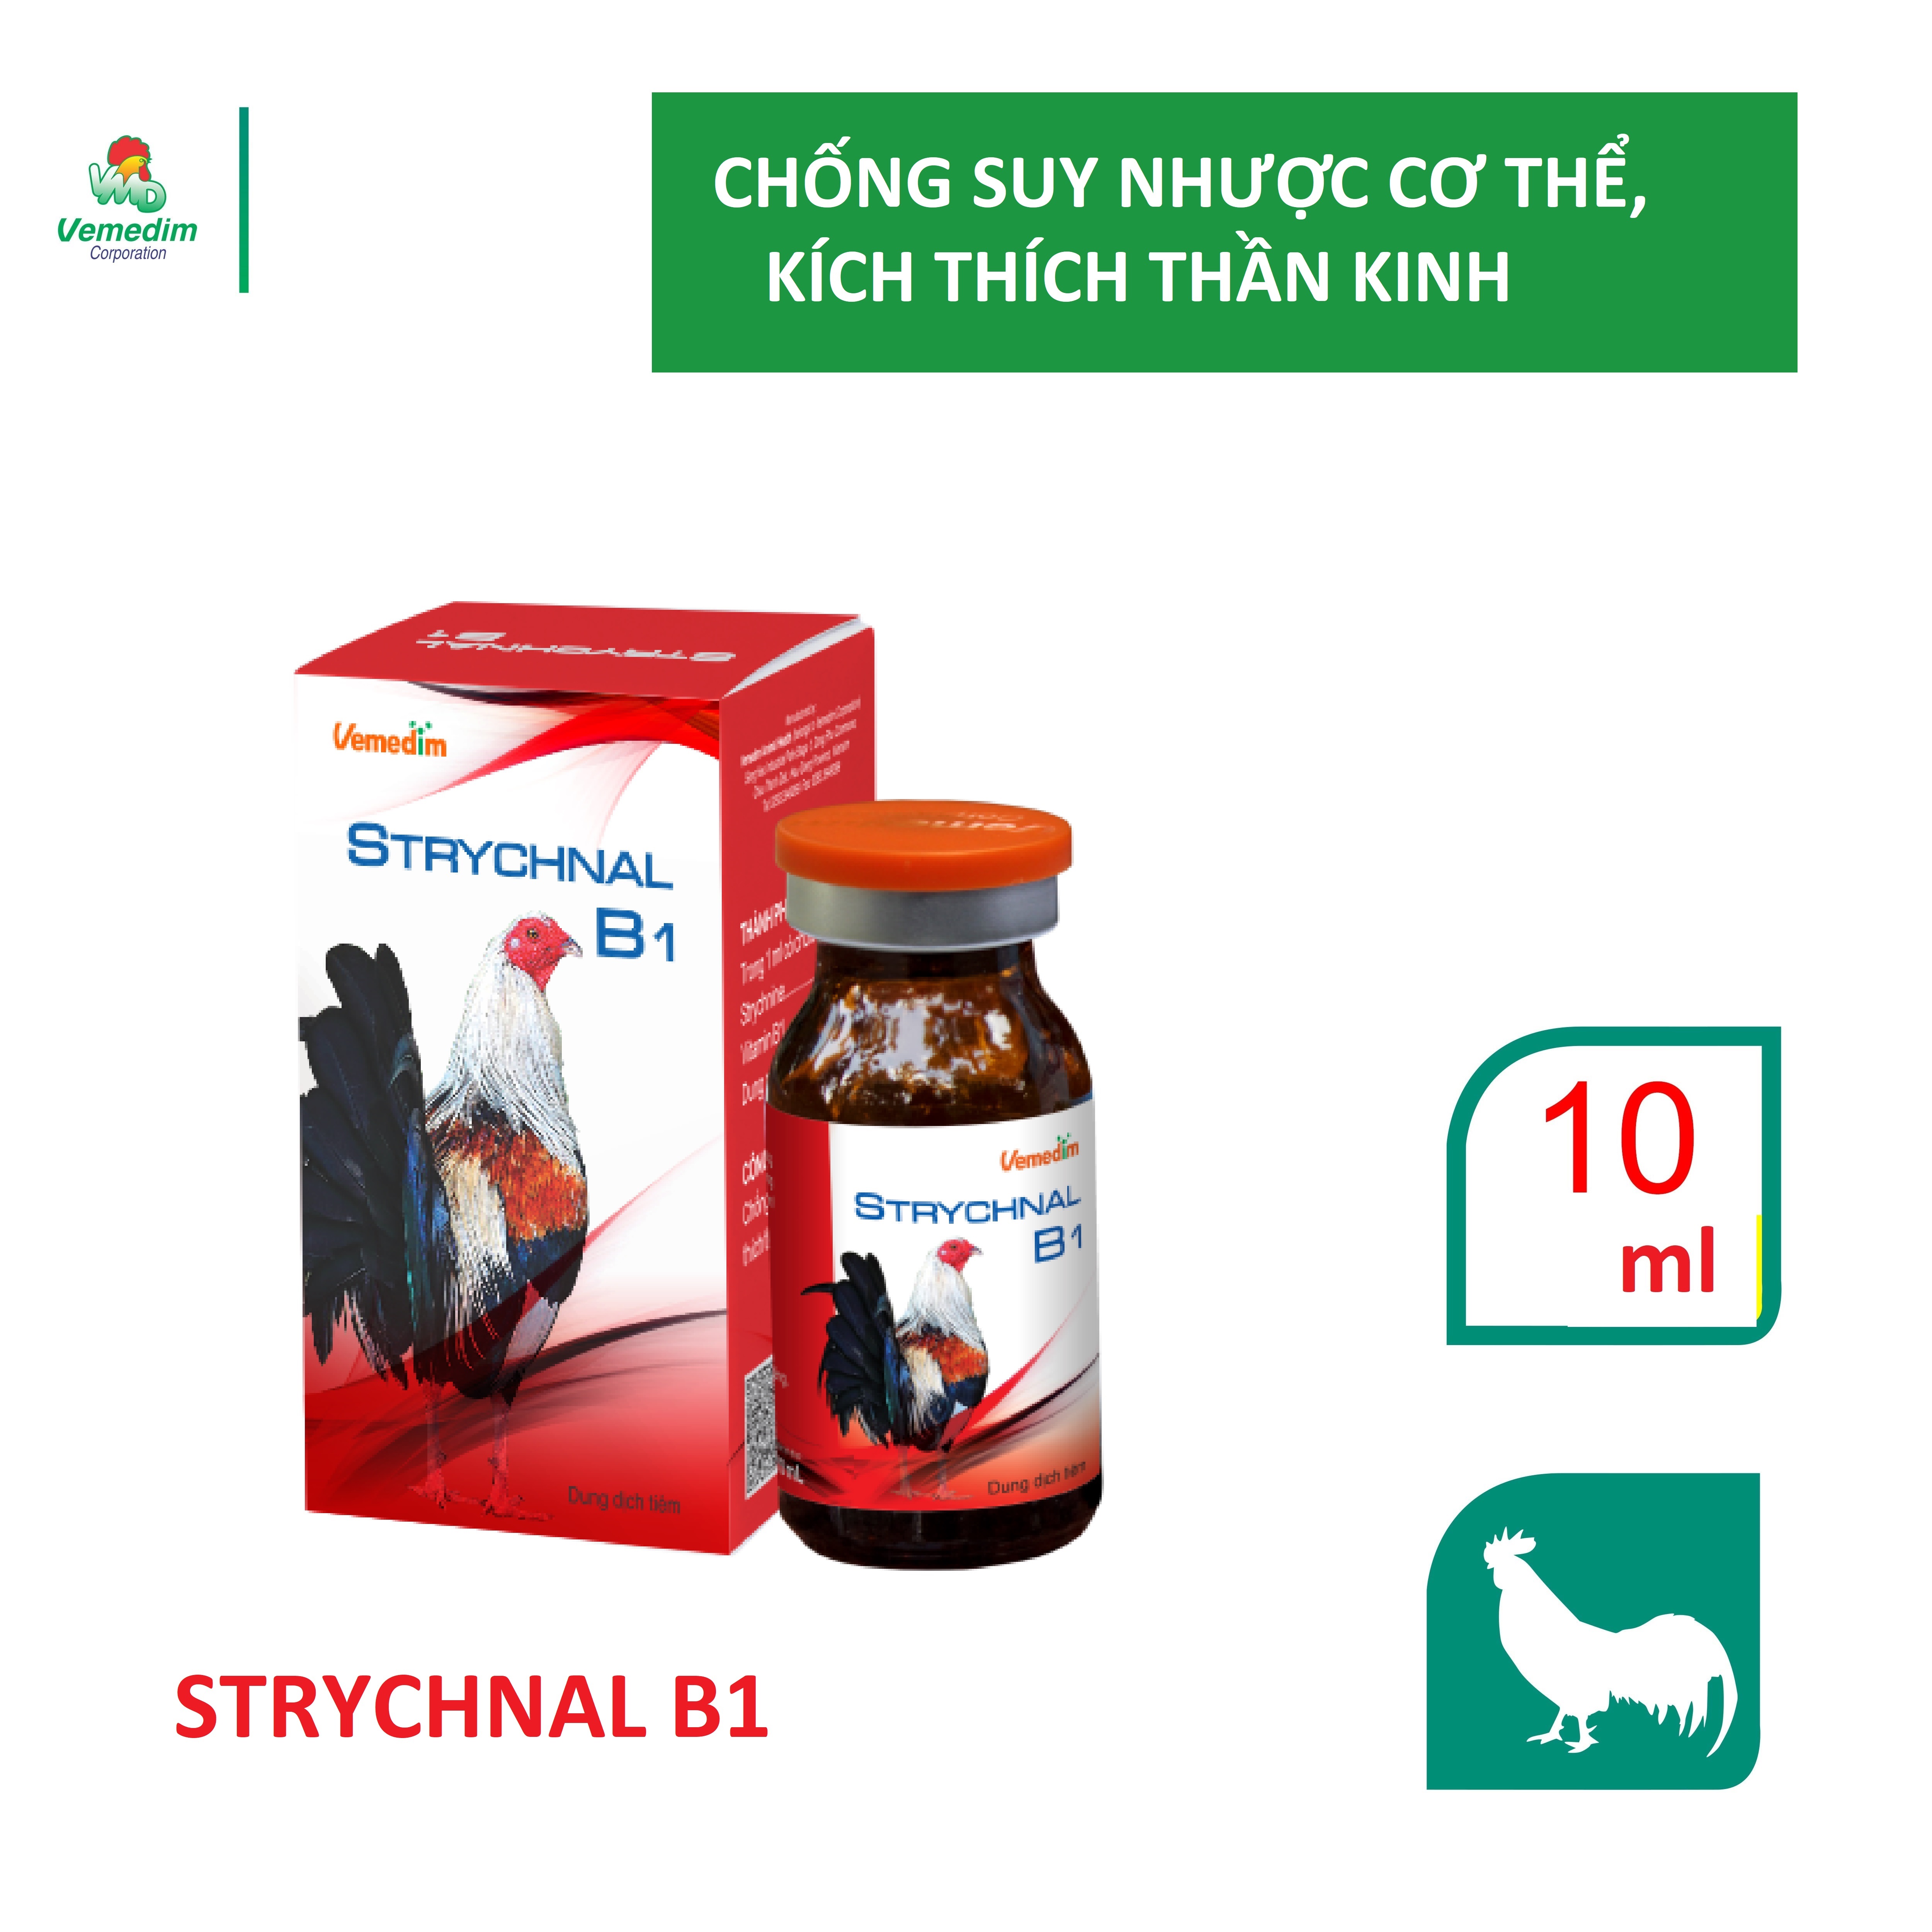 Vemedim Strychnal B1 dùng cho gà đá chống suy nhược, kích thích thần kinh, chai 10ml